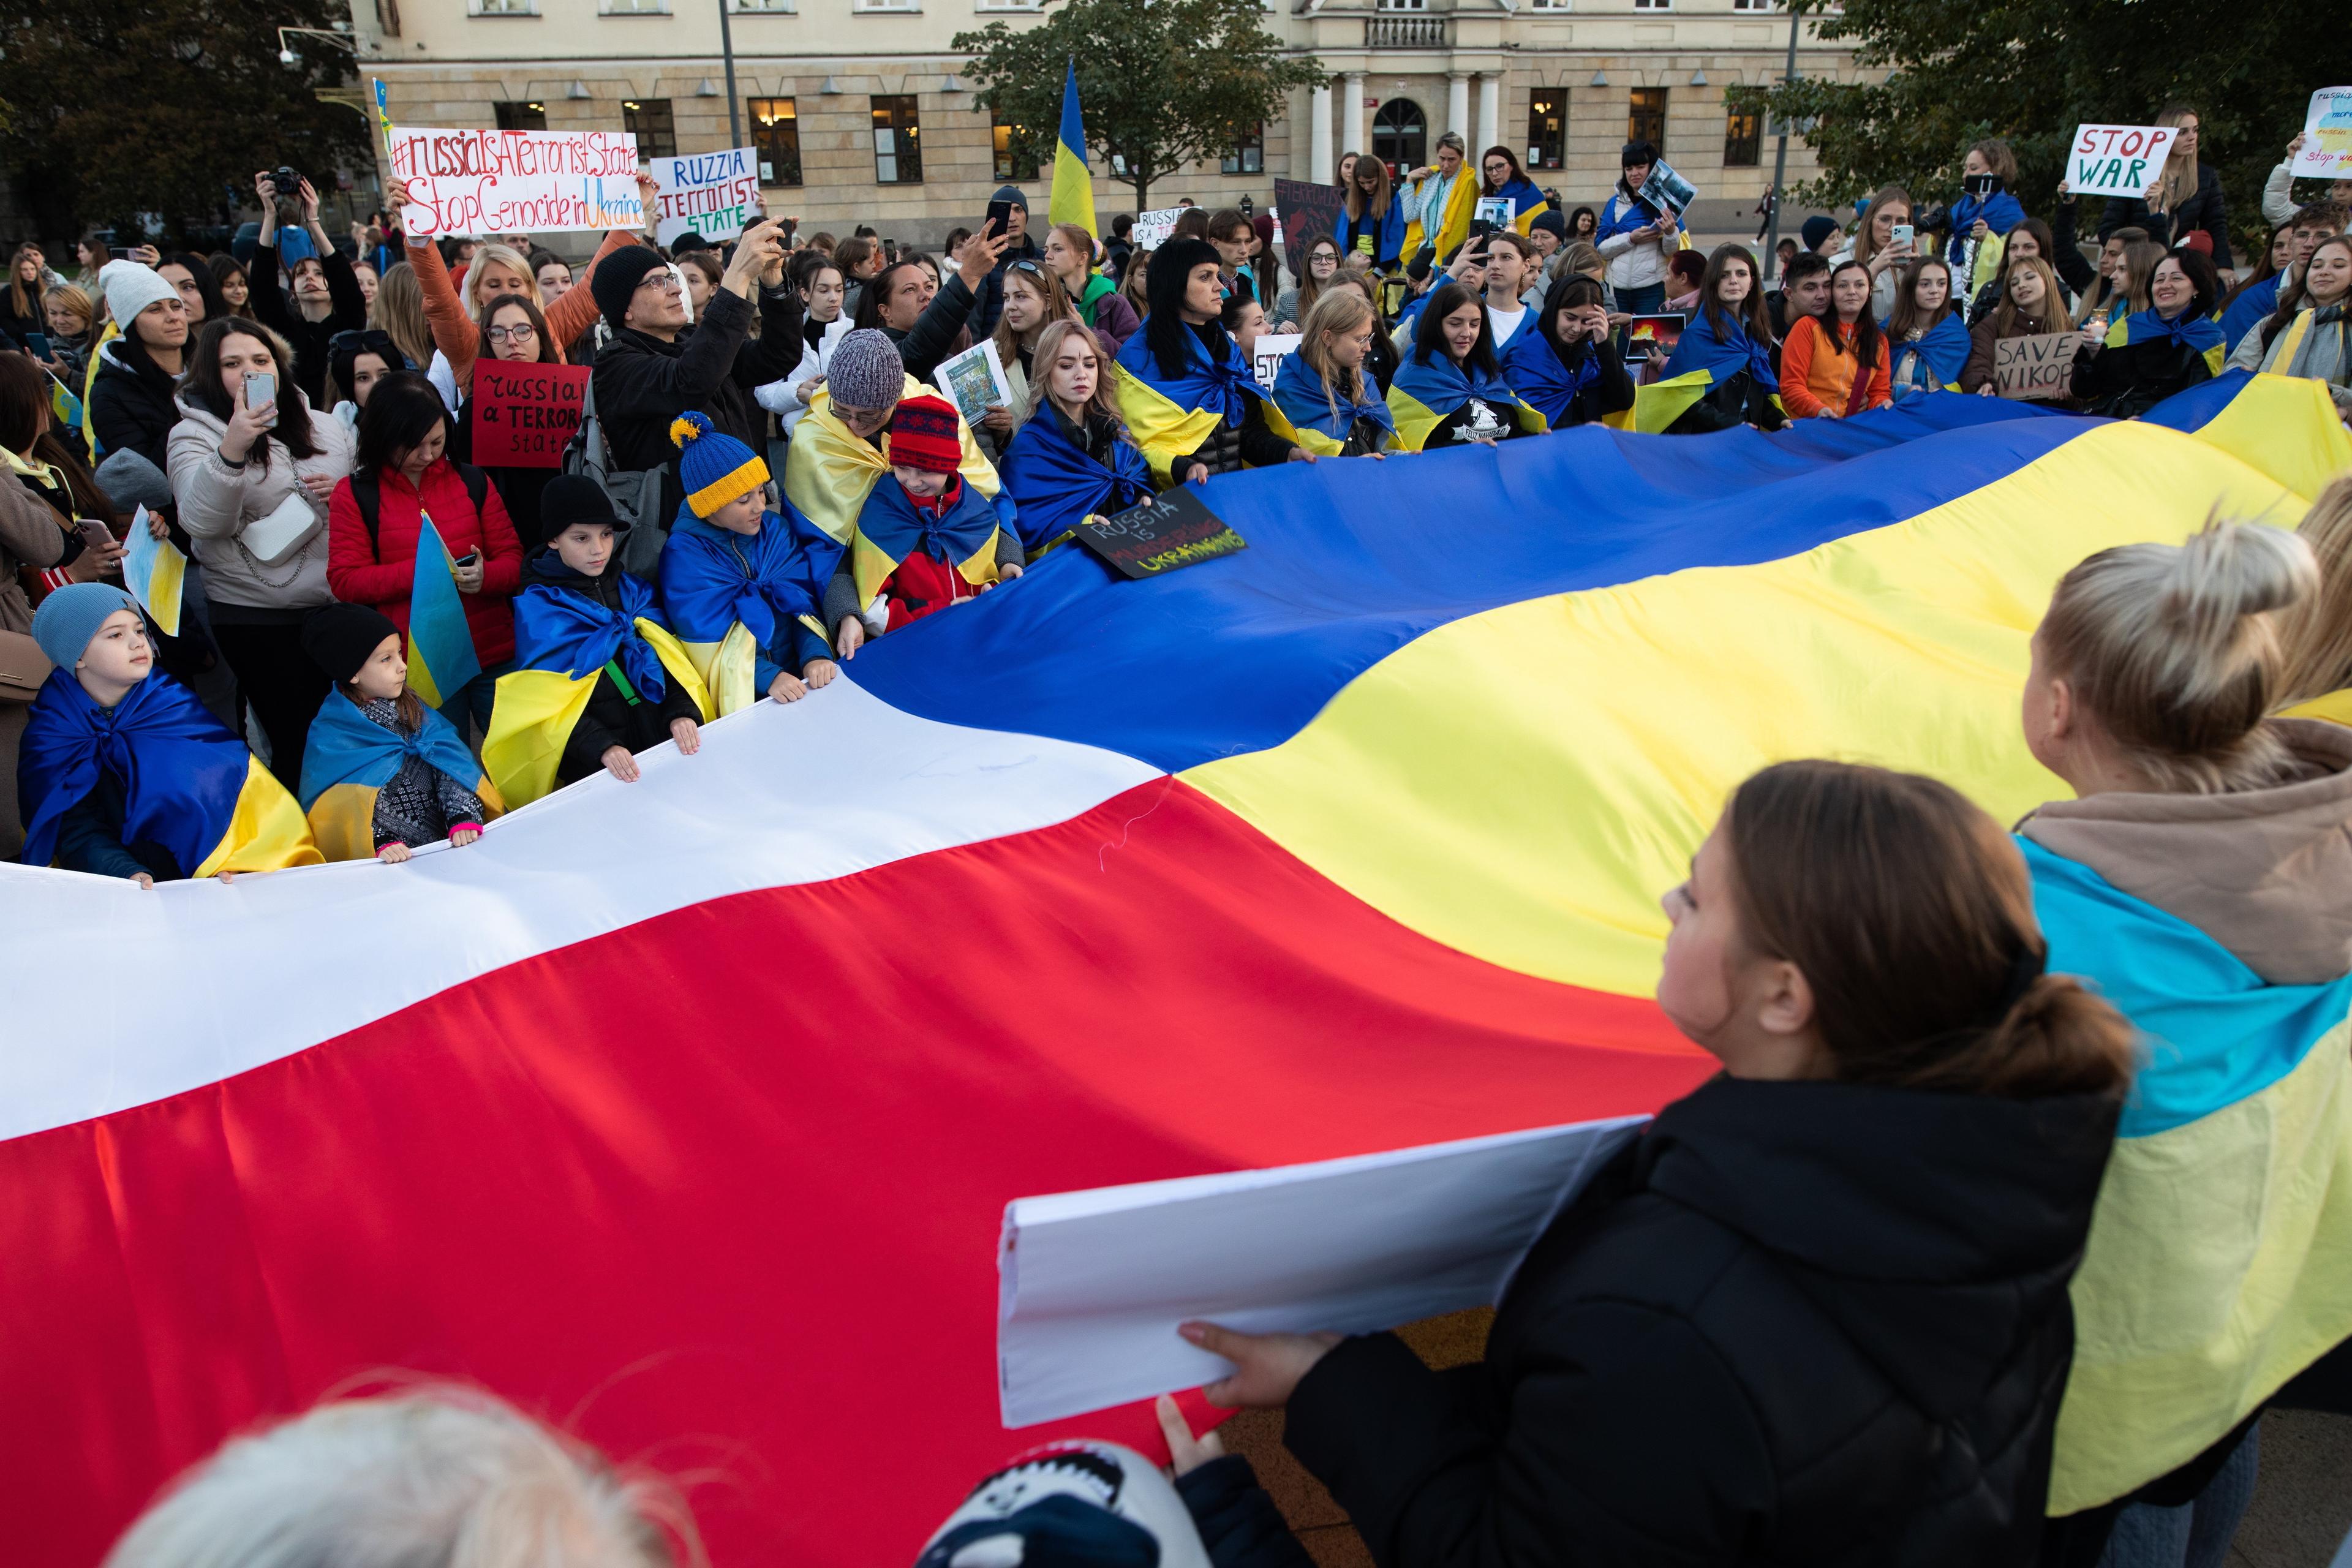 dwie wielkie flagi - polska i ukraińska niesione przez ludzi